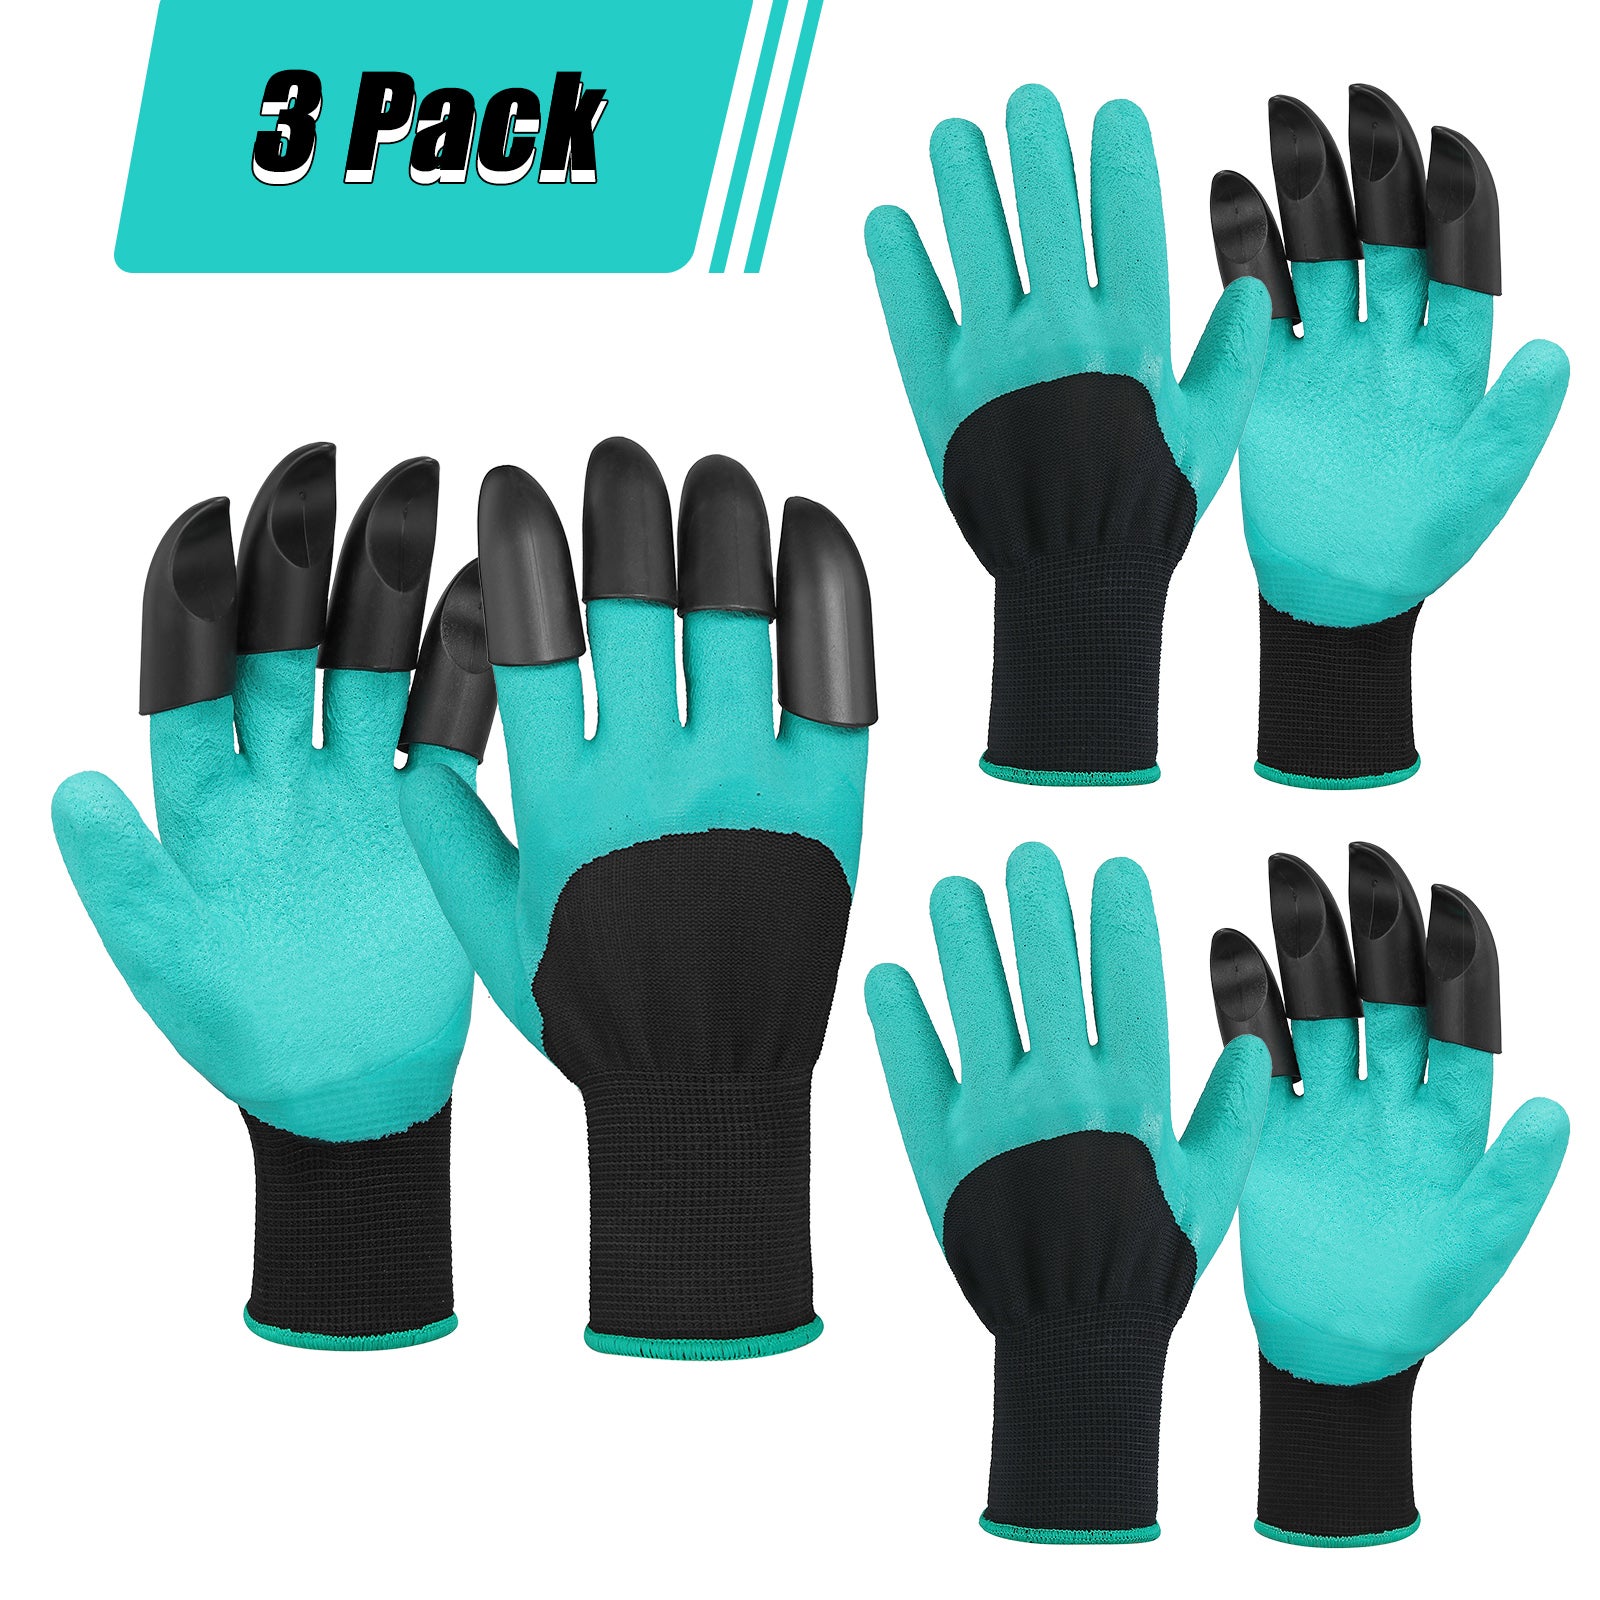 10x paires de gants de travail haut de gamme - Gants de jardin taille  unique 7-11